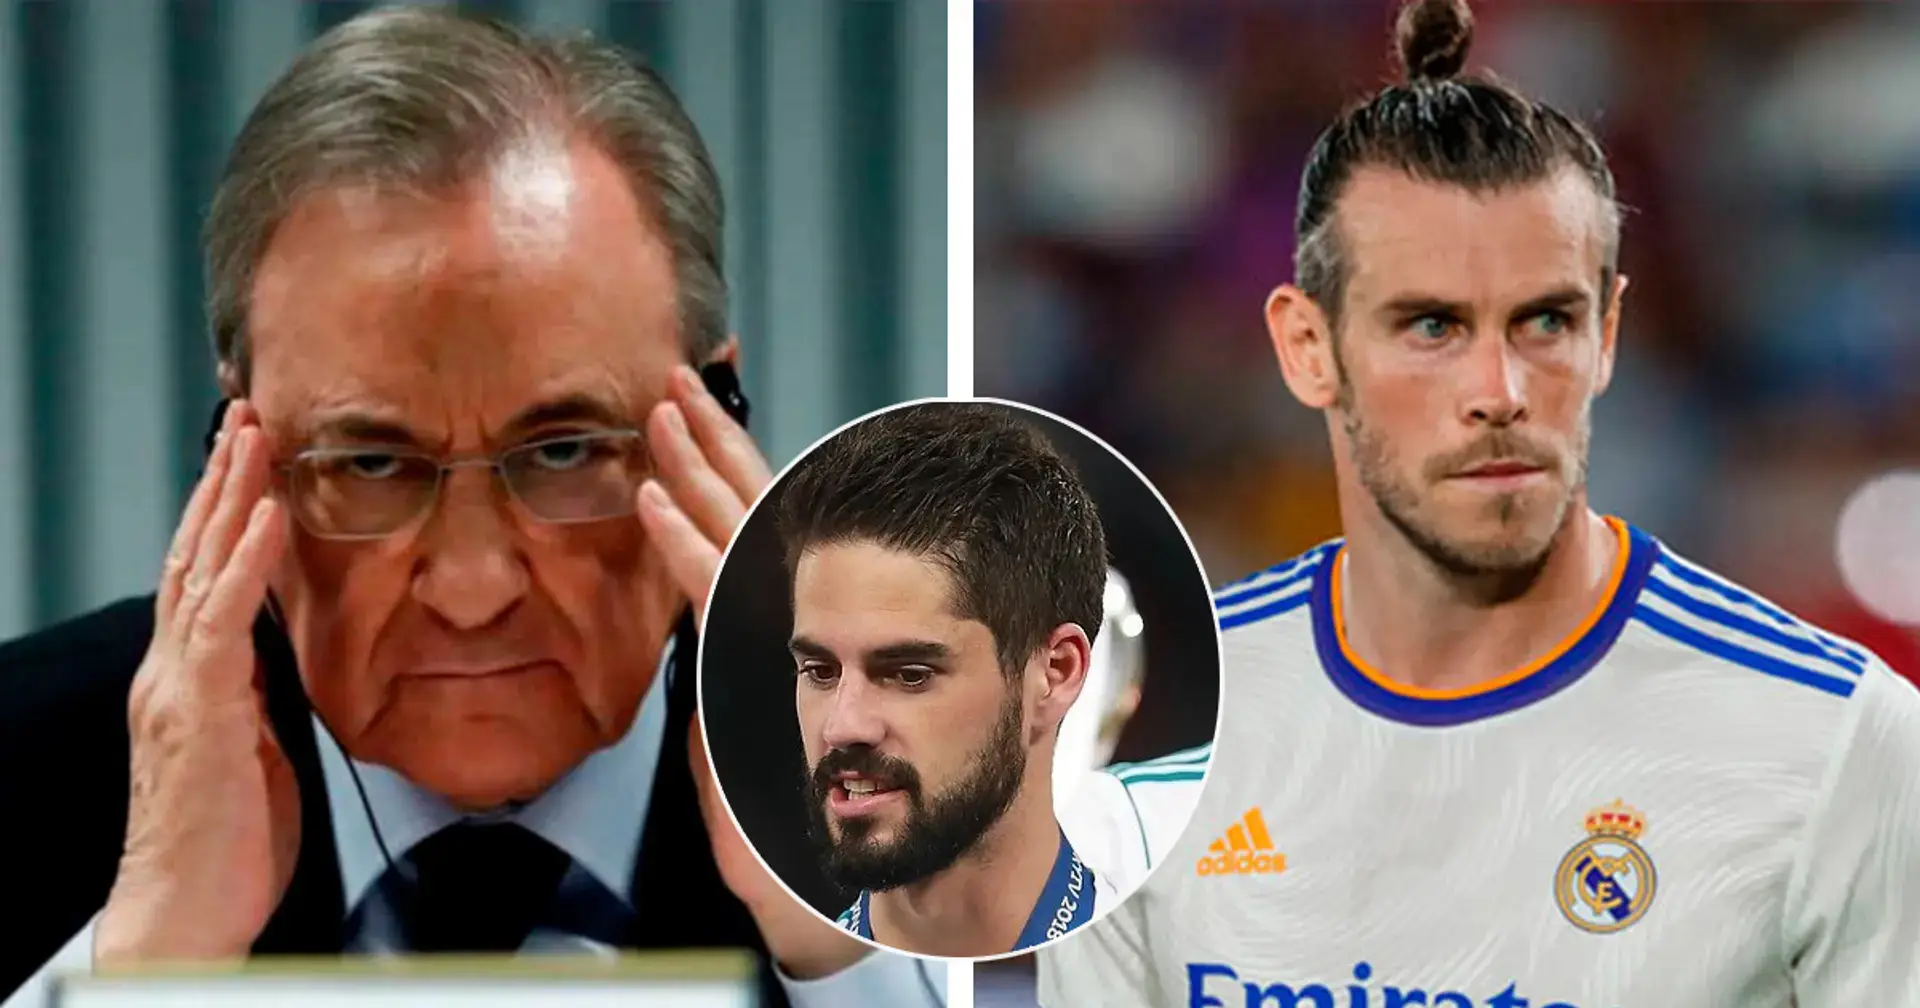 El Real Madrid pone 6 jugadores a la venta incluyendo a Bale e Isco